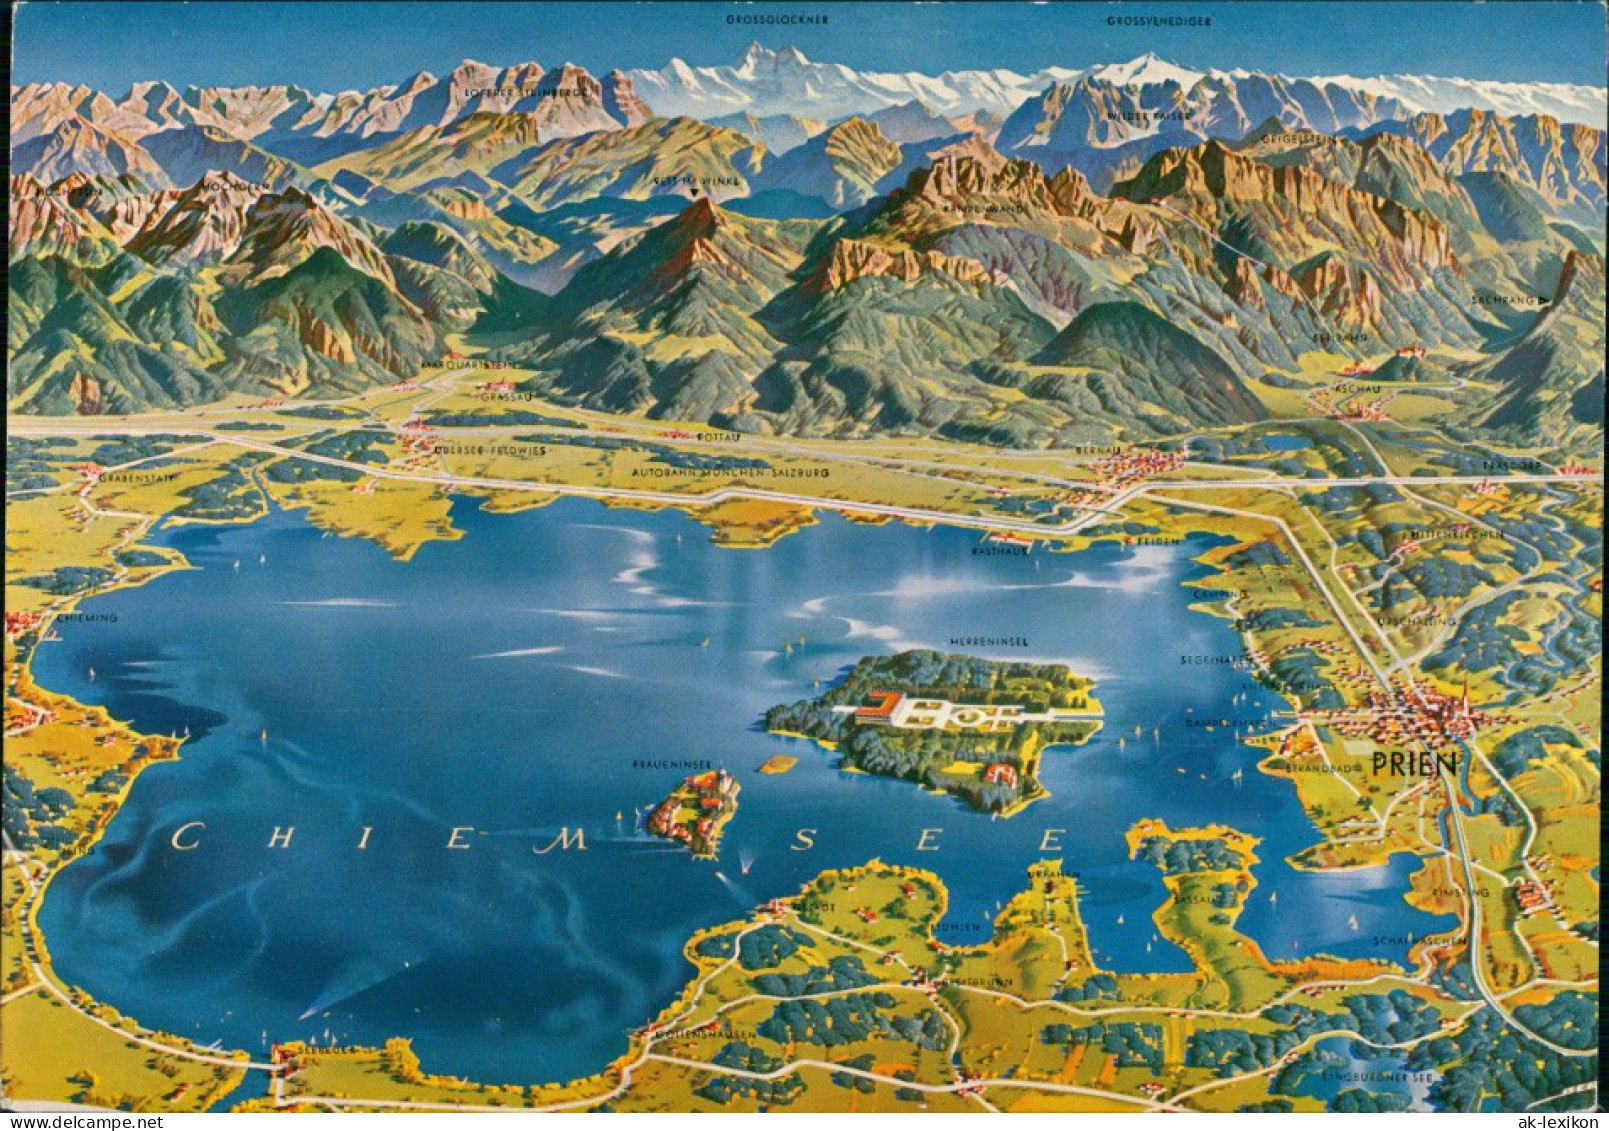 Ansichtskarte Chiemsee Alpen (Allgemein) & Chiemsee Relief-AK Reliefkarte 1970 - Chiemgauer Alpen